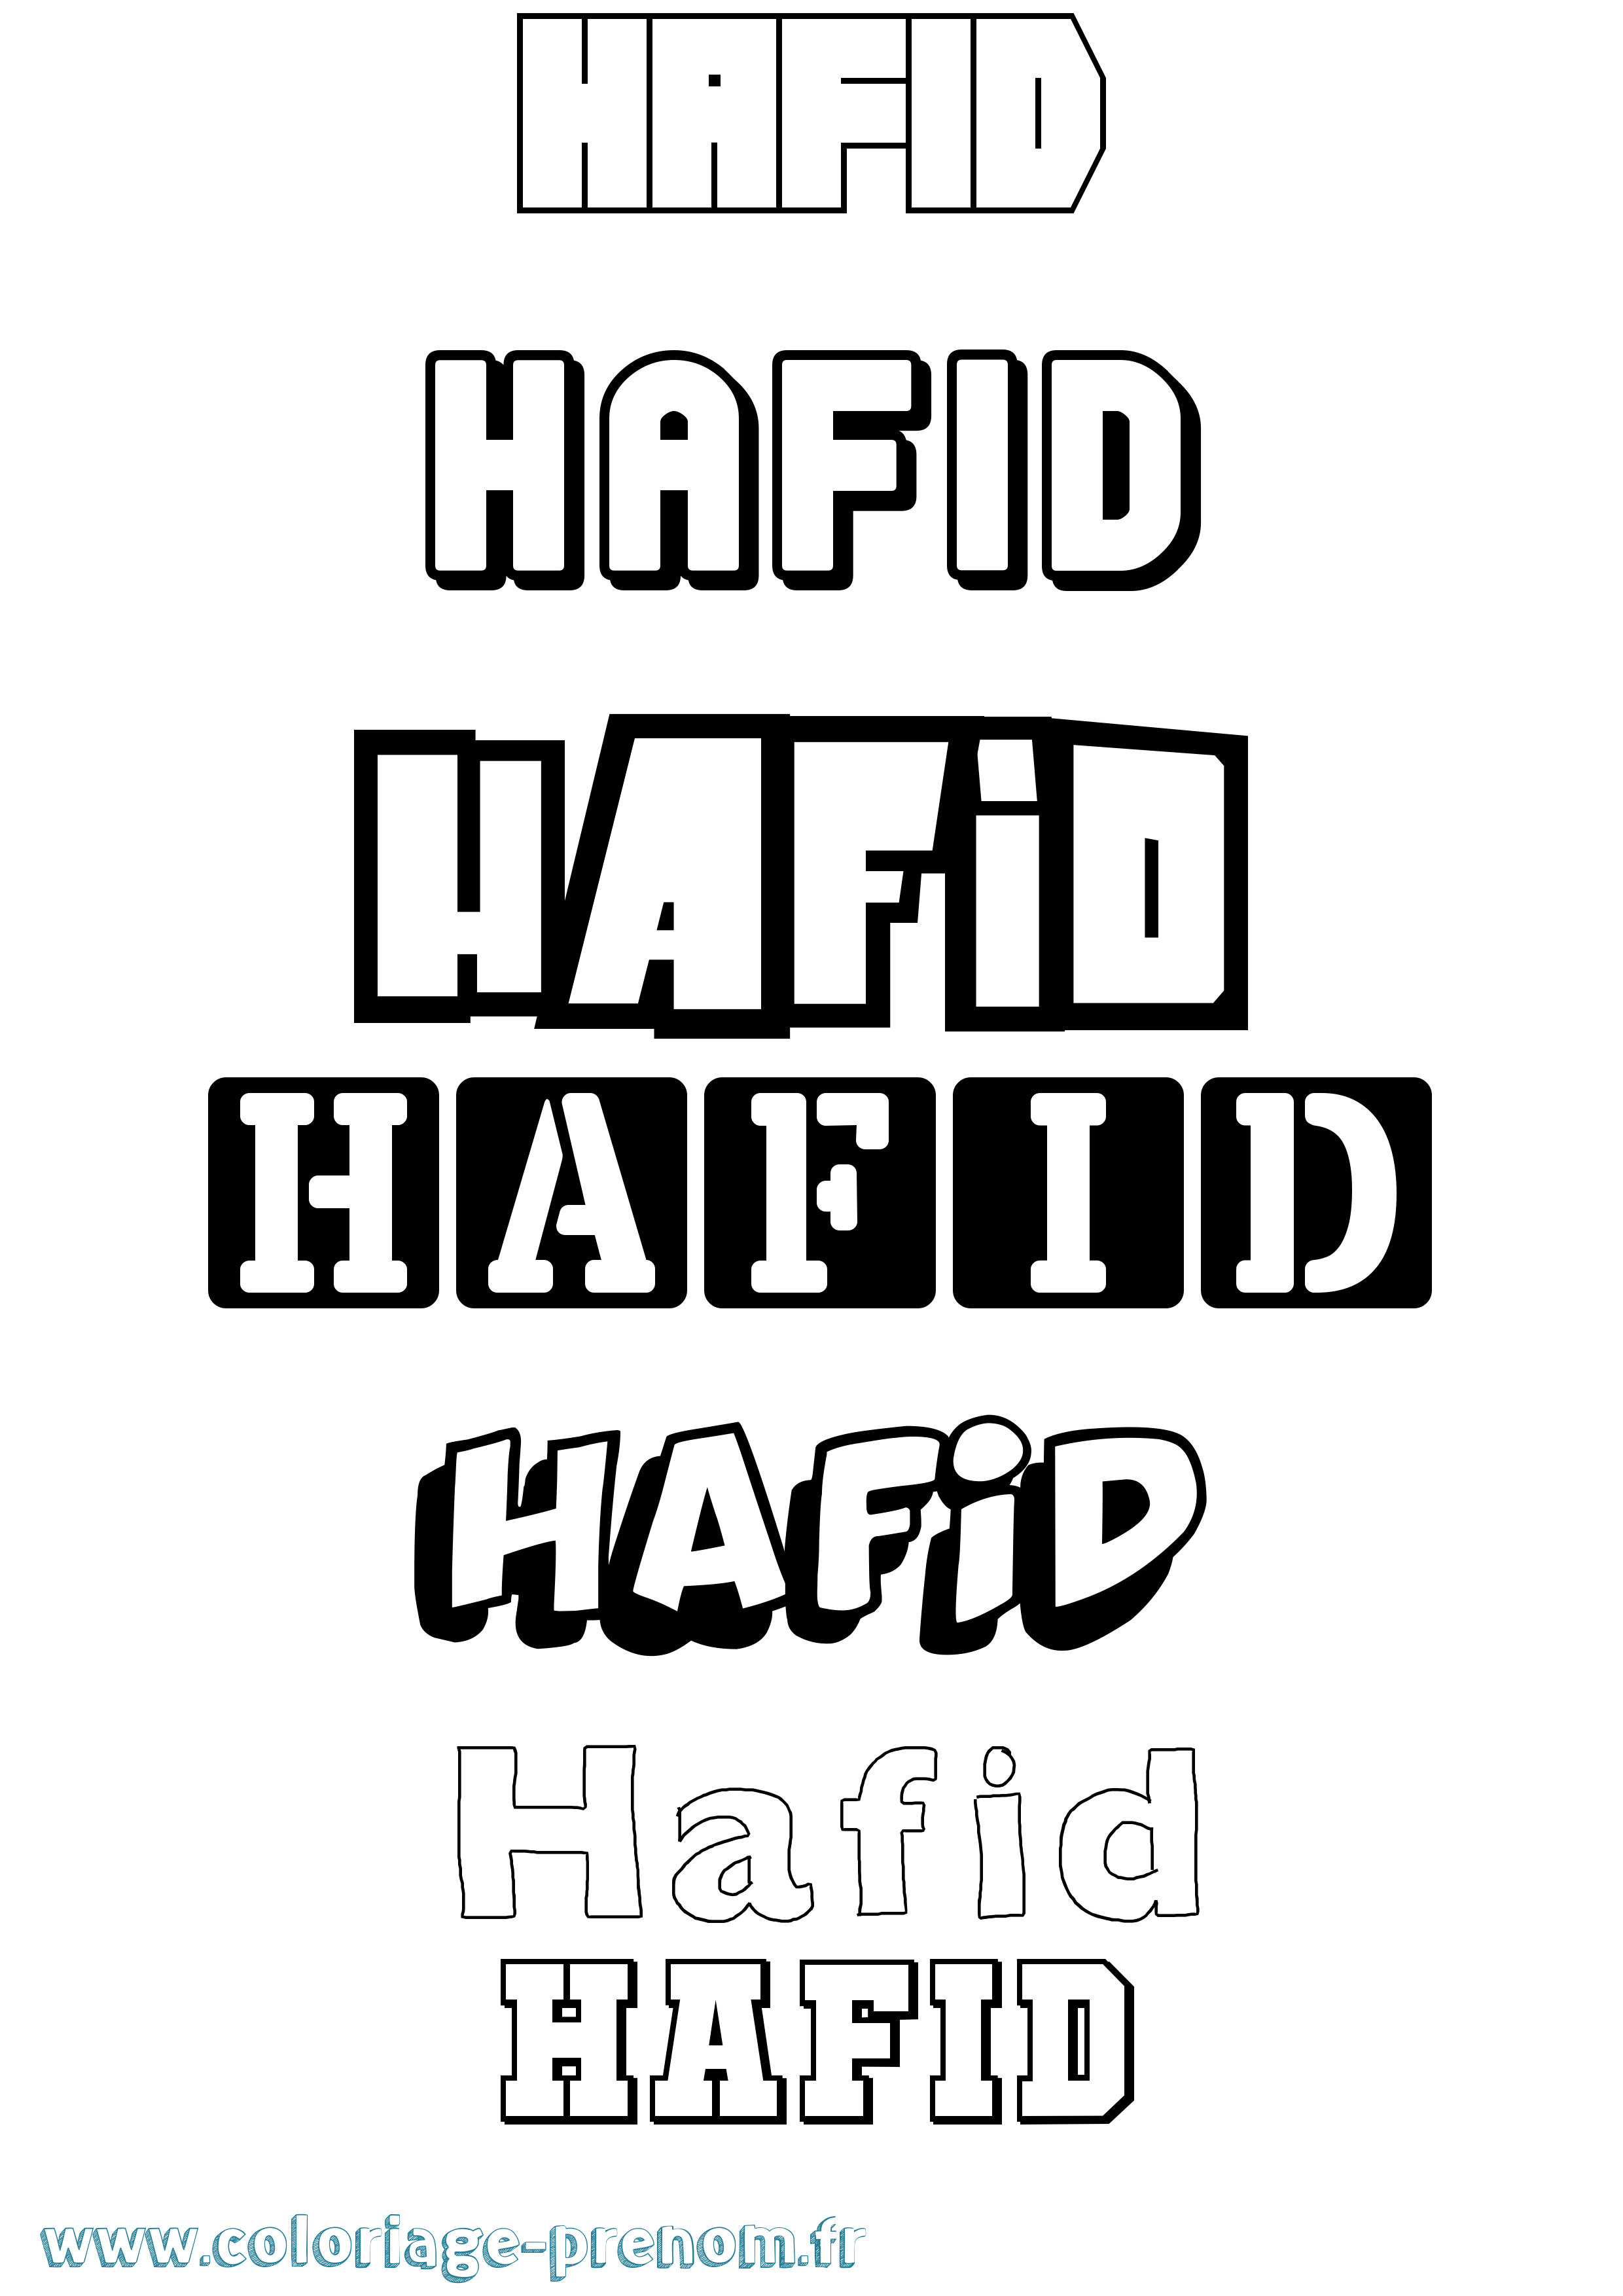 Coloriage prénom Hafid Simple